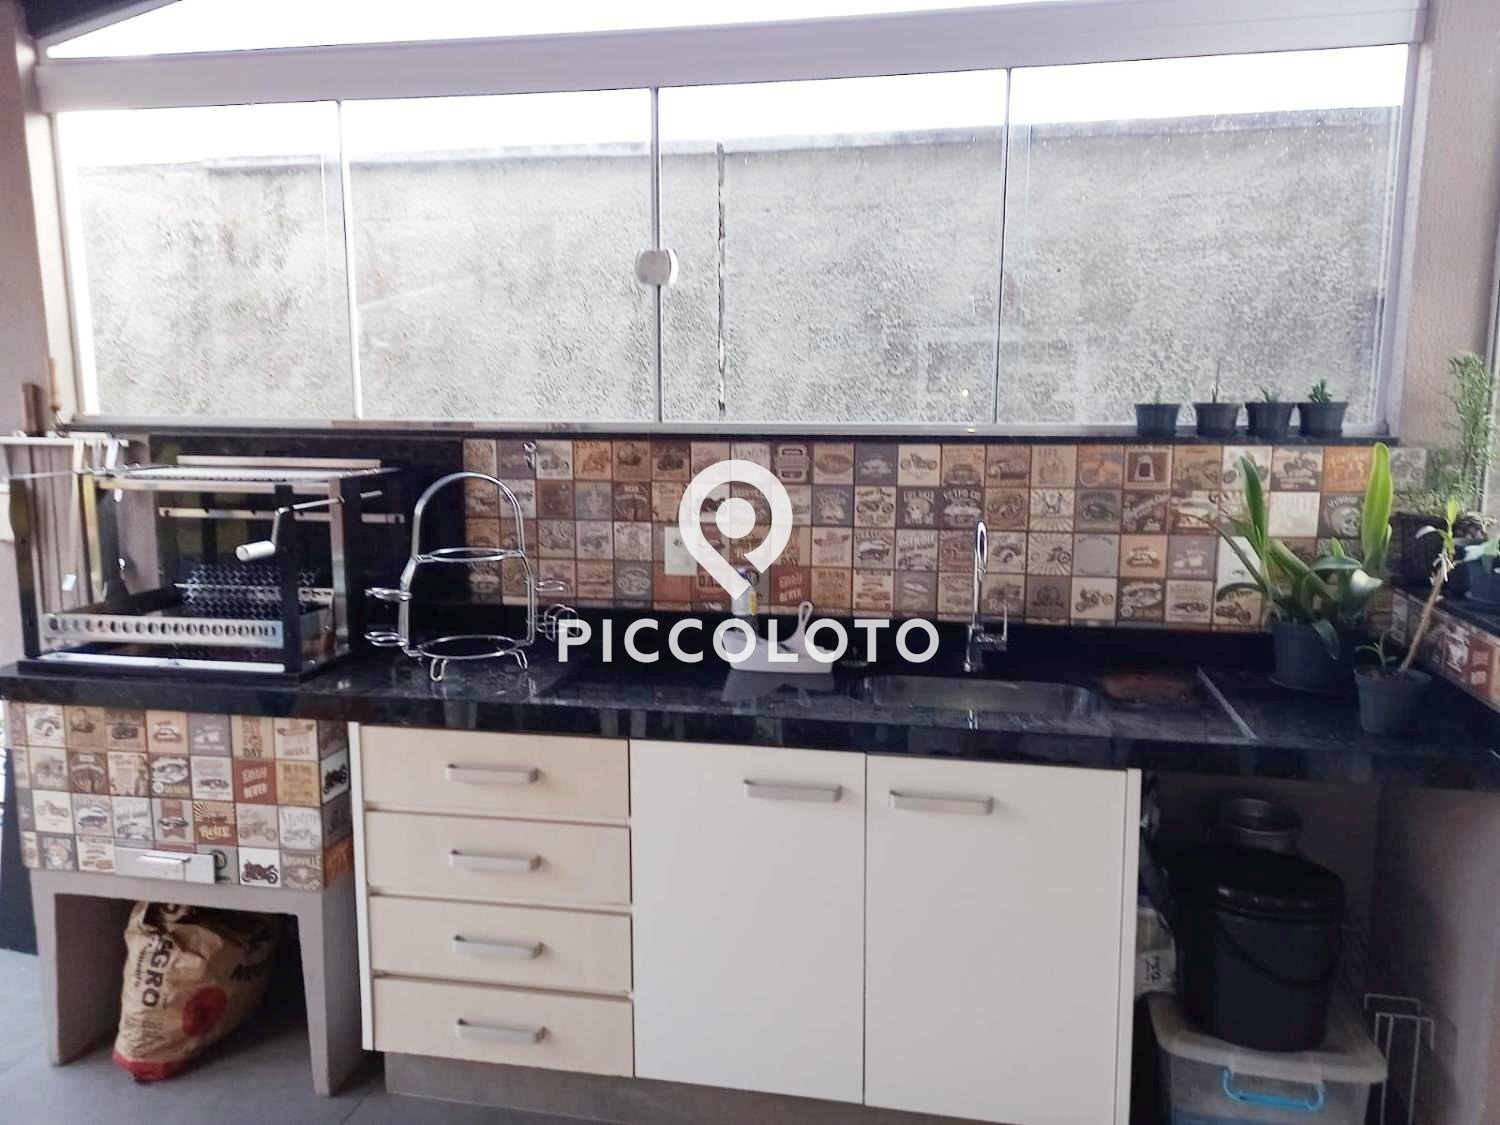 Piccoloto -Casa à venda no Loteamento Residencial Vila Bella em Campinas